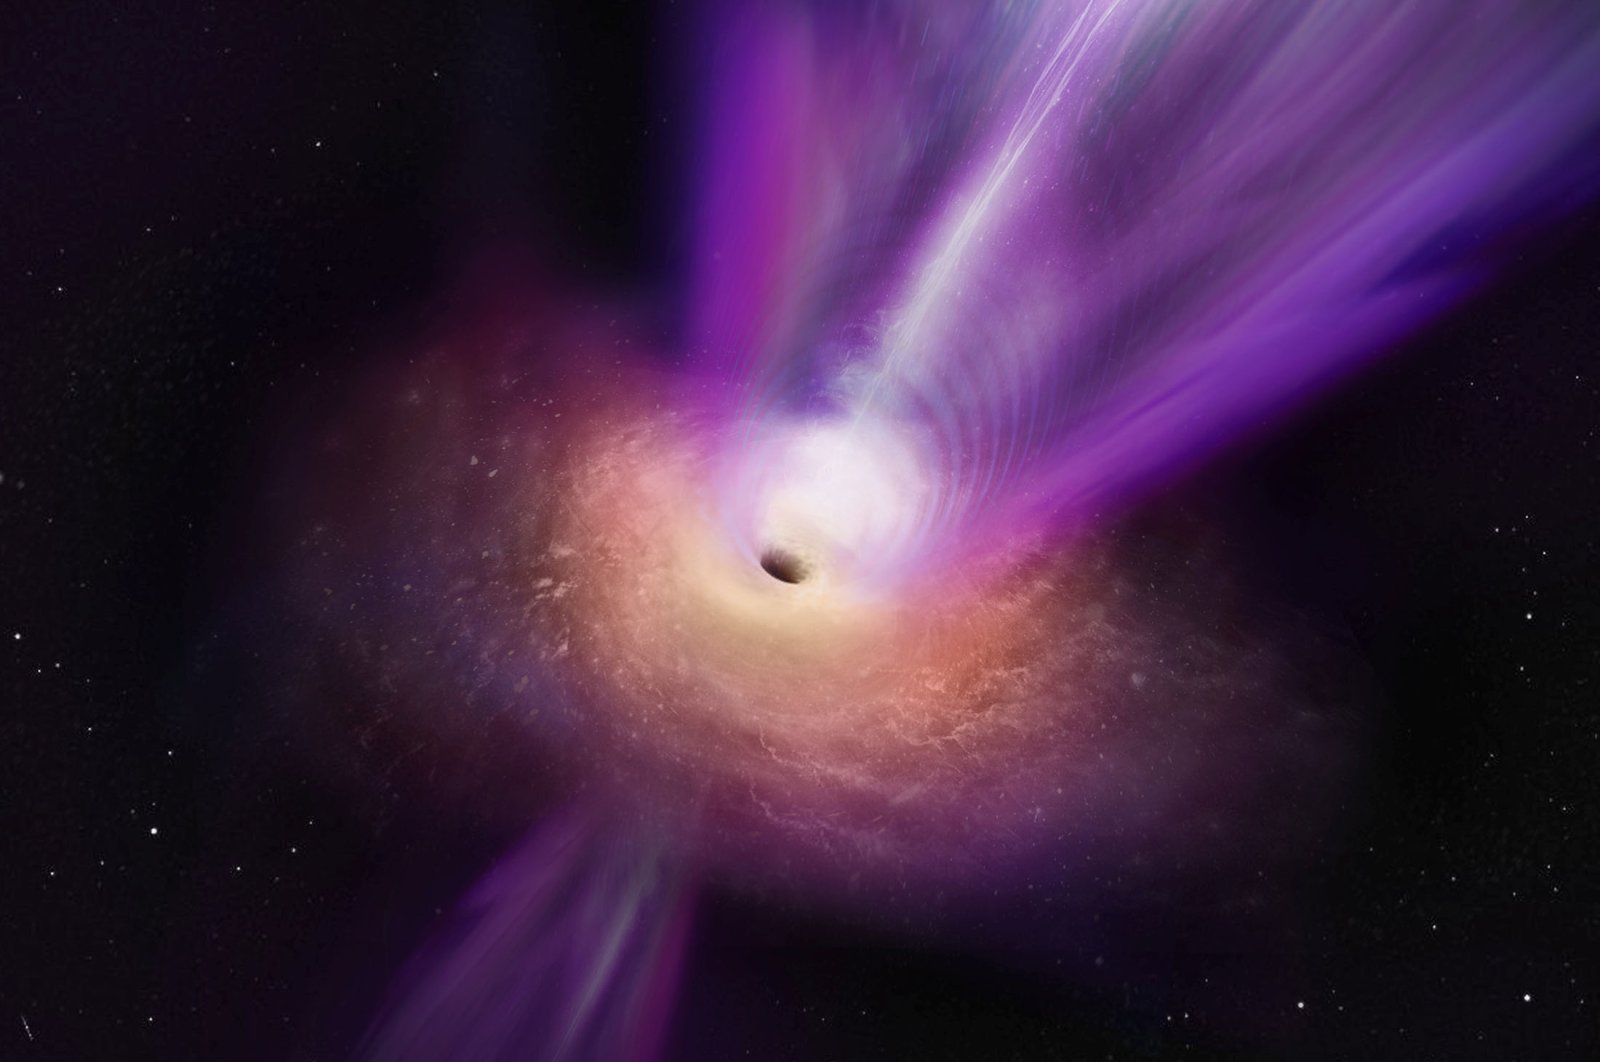 Pancaran energi tinggi dari lubang hitam supermasif terlihat untuk pertama kalinya